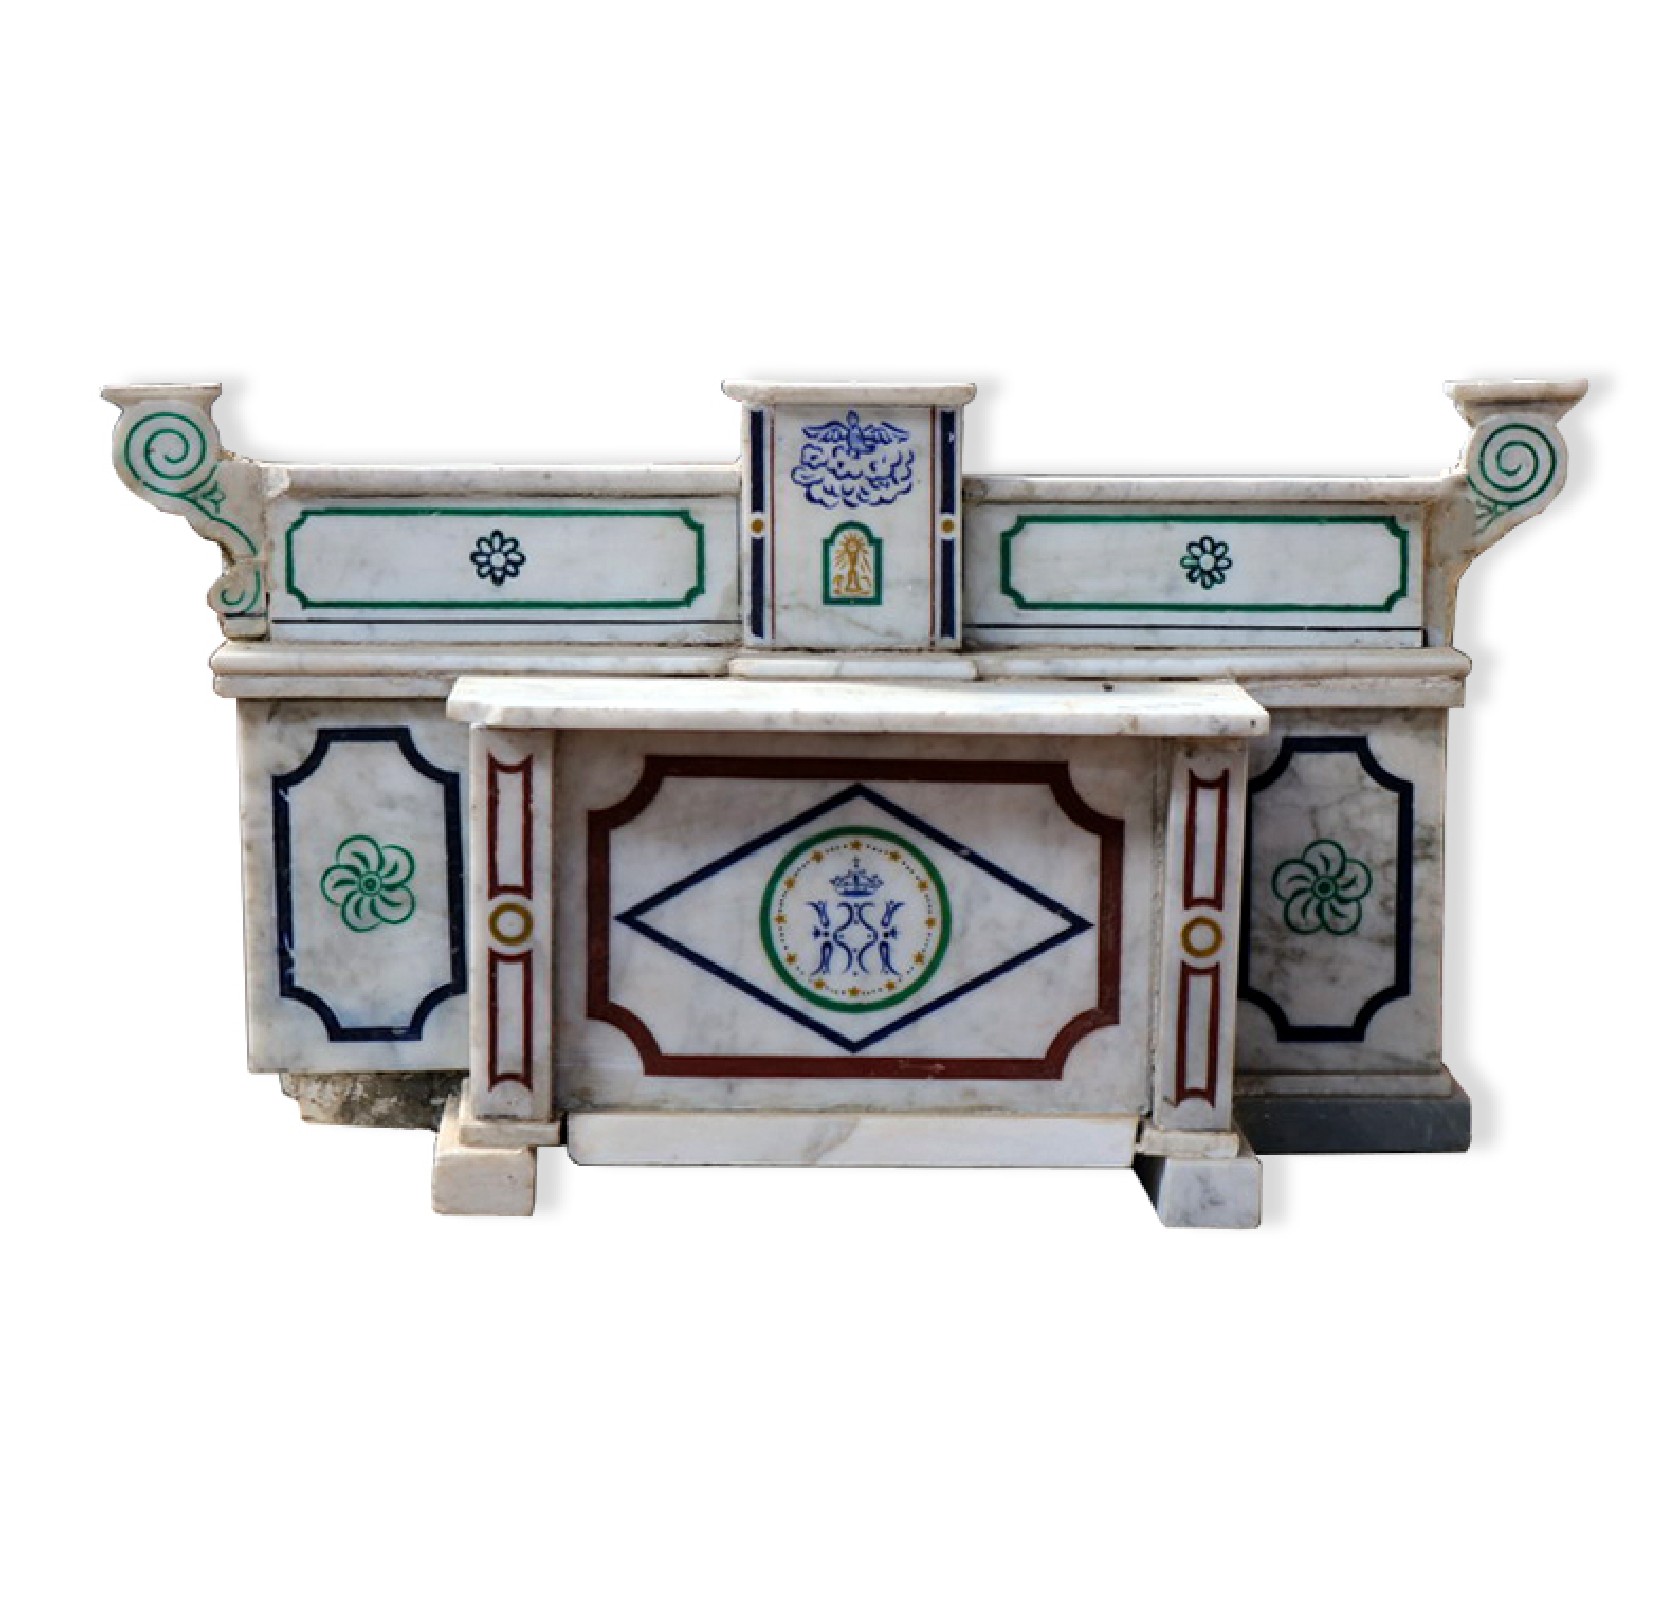 Antico modellino di Altare in marmo. Epoca 1700. - Tabernacoli - Architettura - Prodotti - Antichità Fiorillo